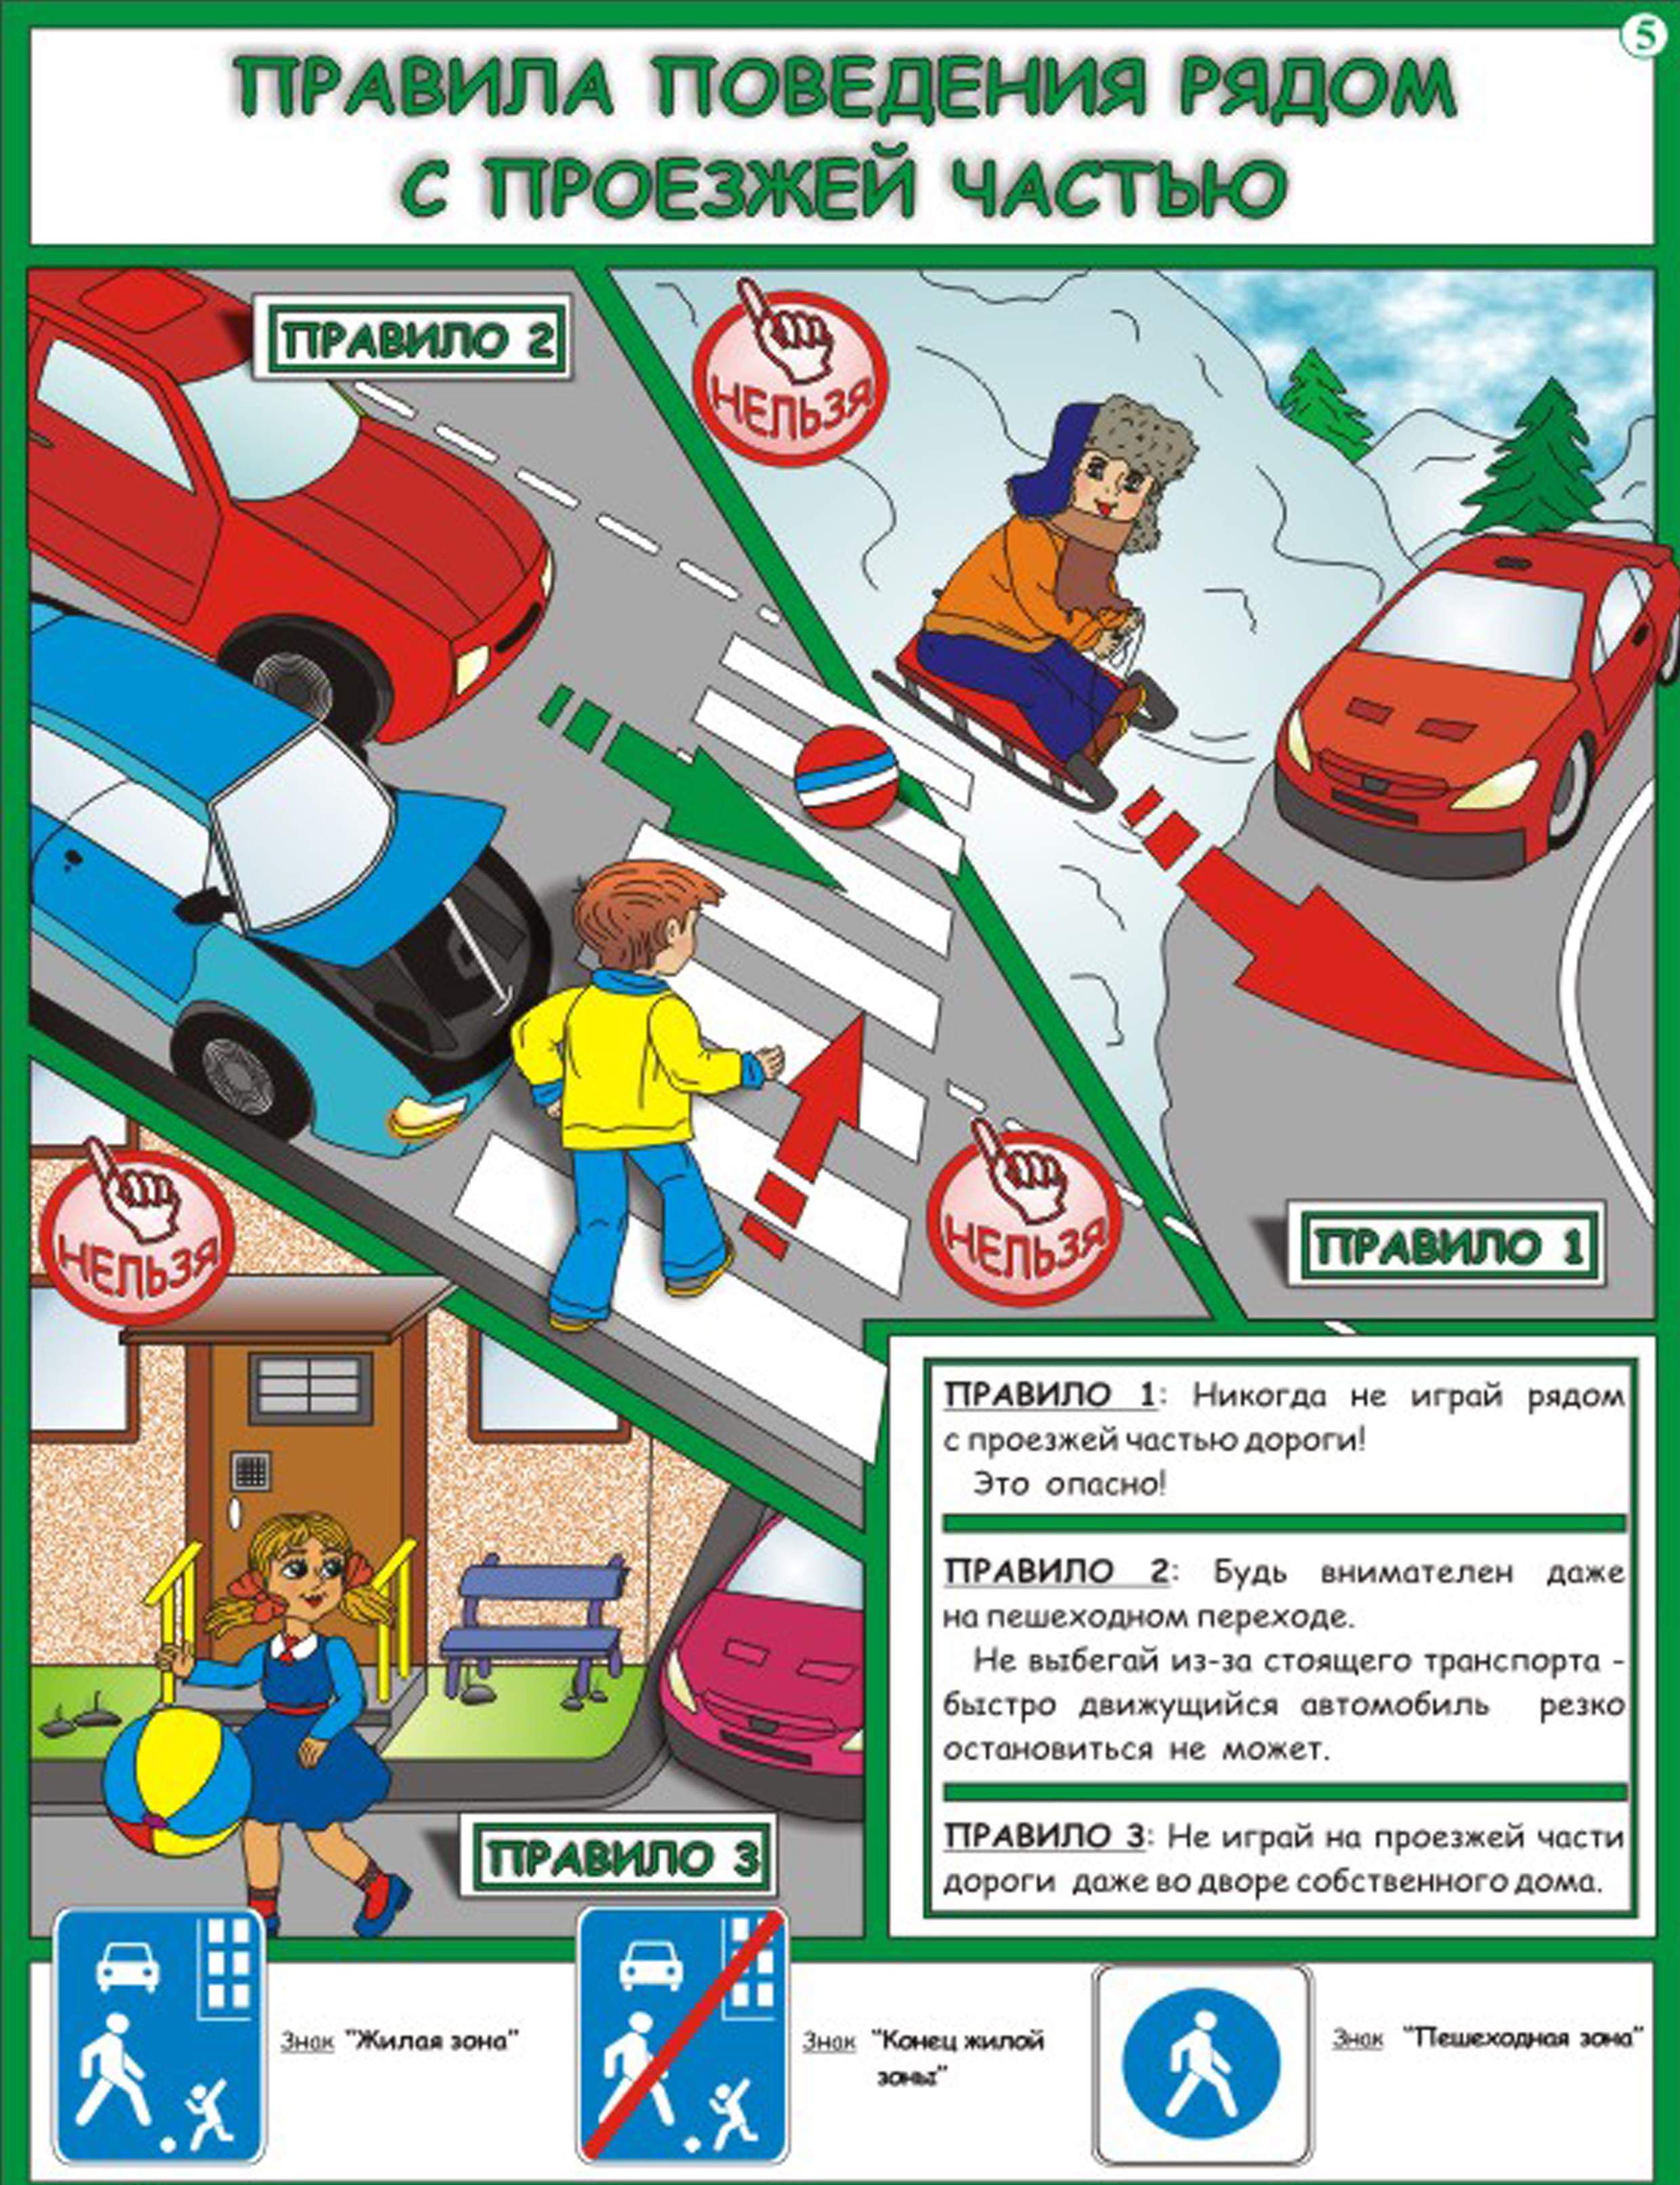 Правила пересечения проезжей части дороги для детей